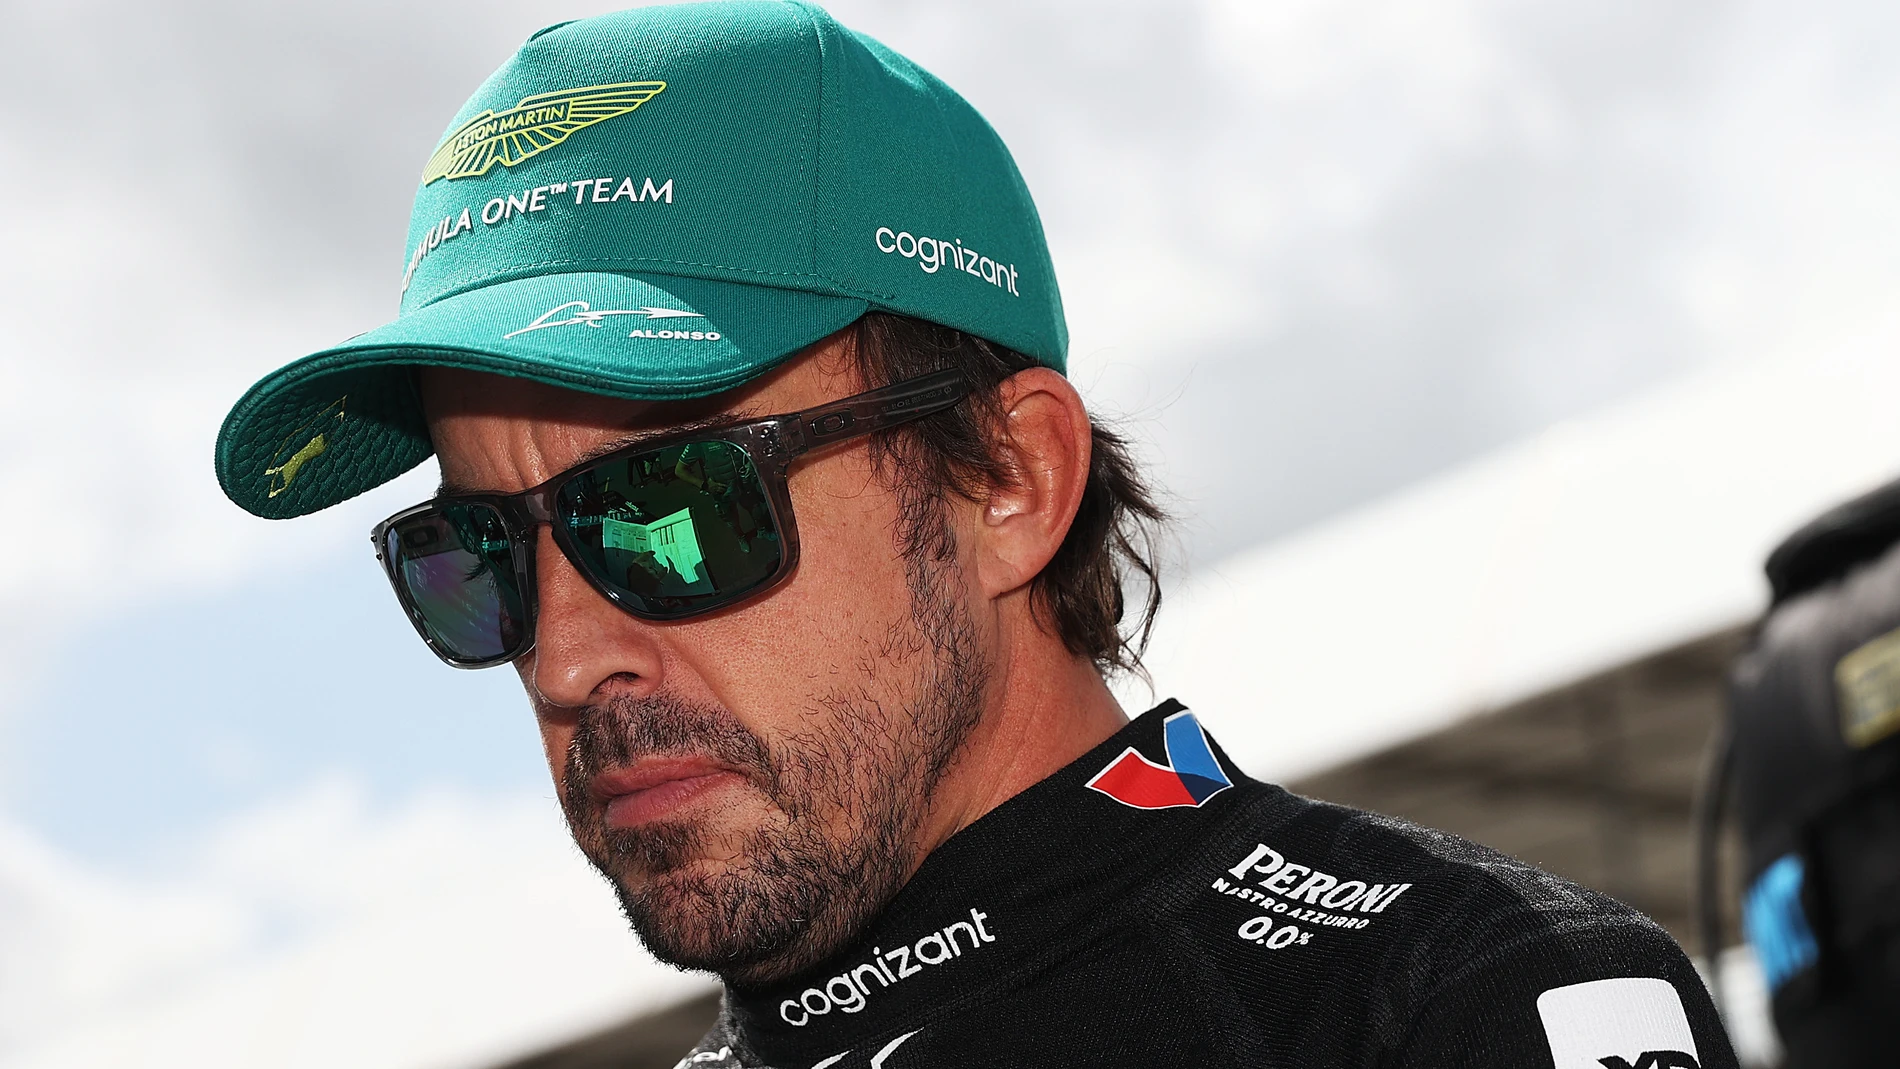 Fernando Alonso: «Tengo que decidir si quiero seguir compitiendo o no»